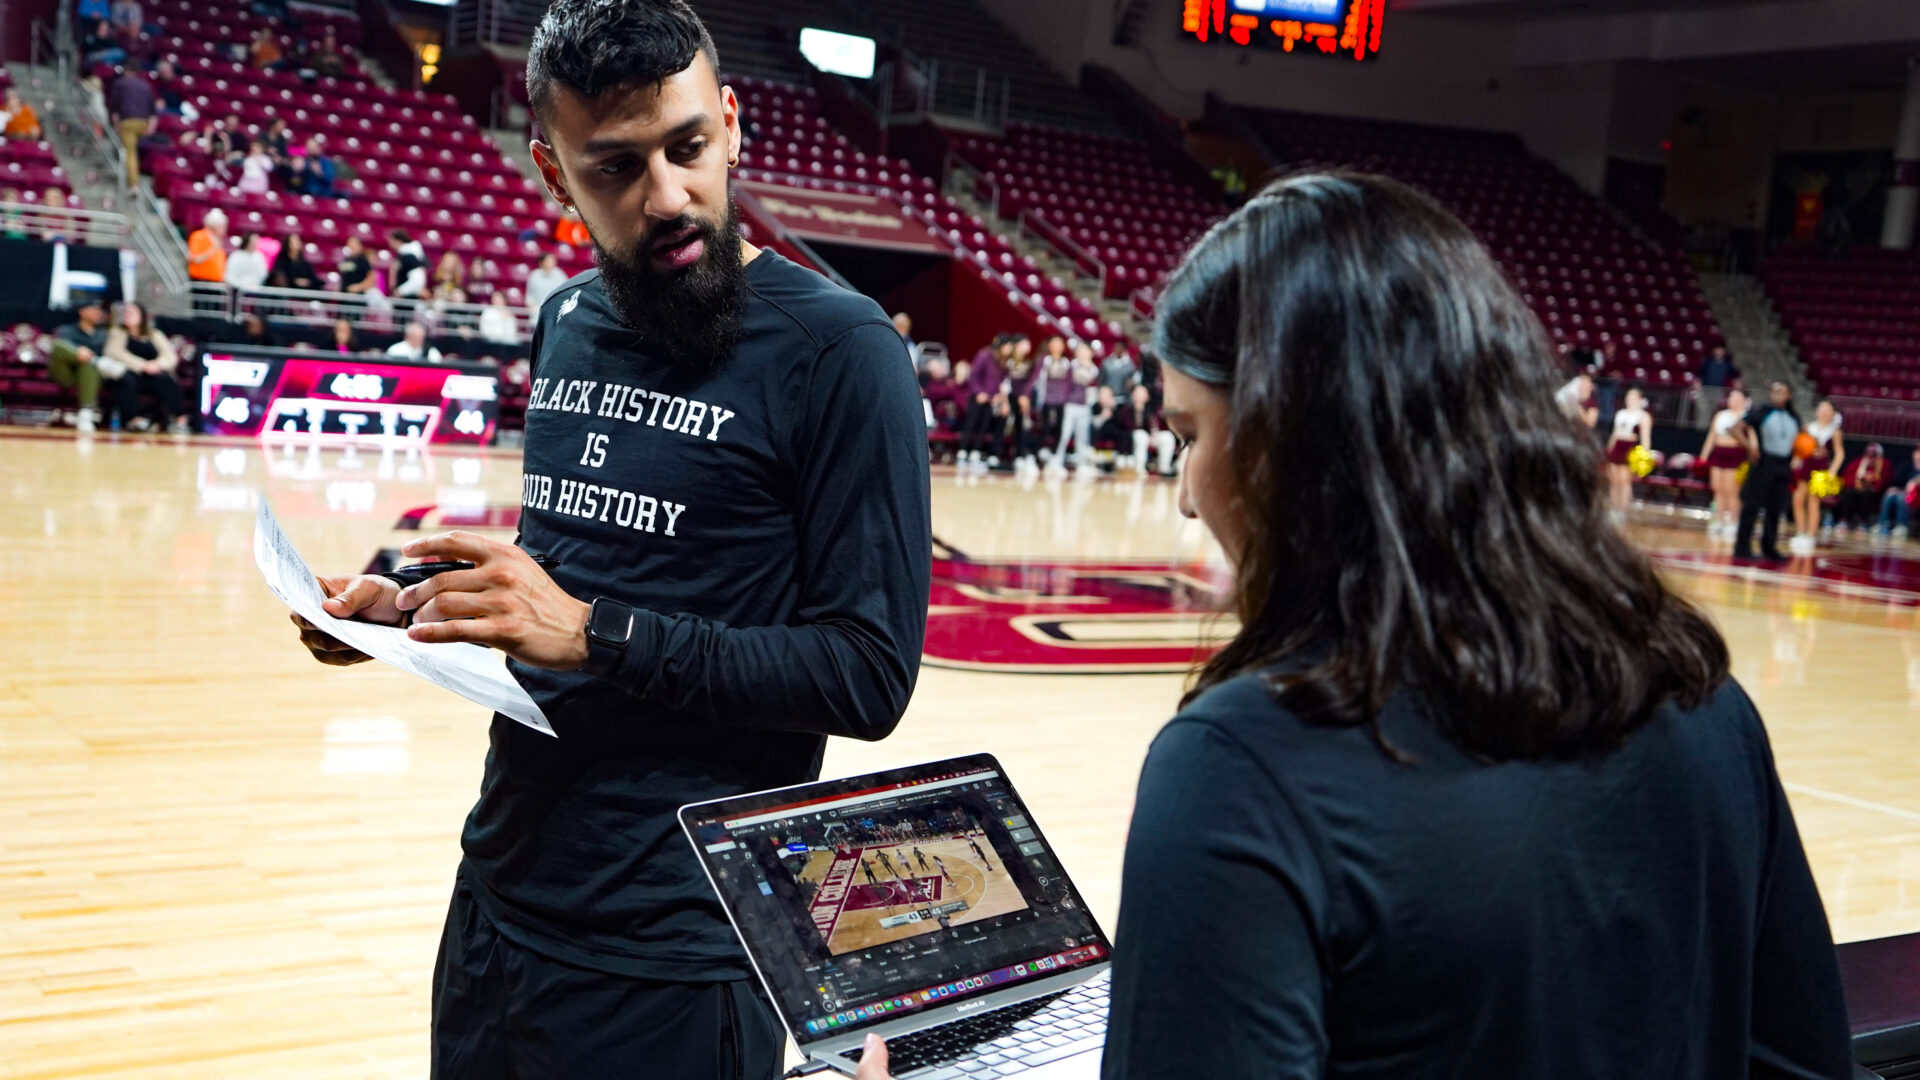 В динамичной обстановке на корте член команды Бостонского колледжа использует платформу Catapult Pro Video Focus на ноутбуке для анализа баскетбольного видео в реальном времени. Рабочий процесс «в реальном времени» в действии демонстрирует, как мгновенный анализ побочных эффектов позволяет командам быстро принимать стратегические решения.